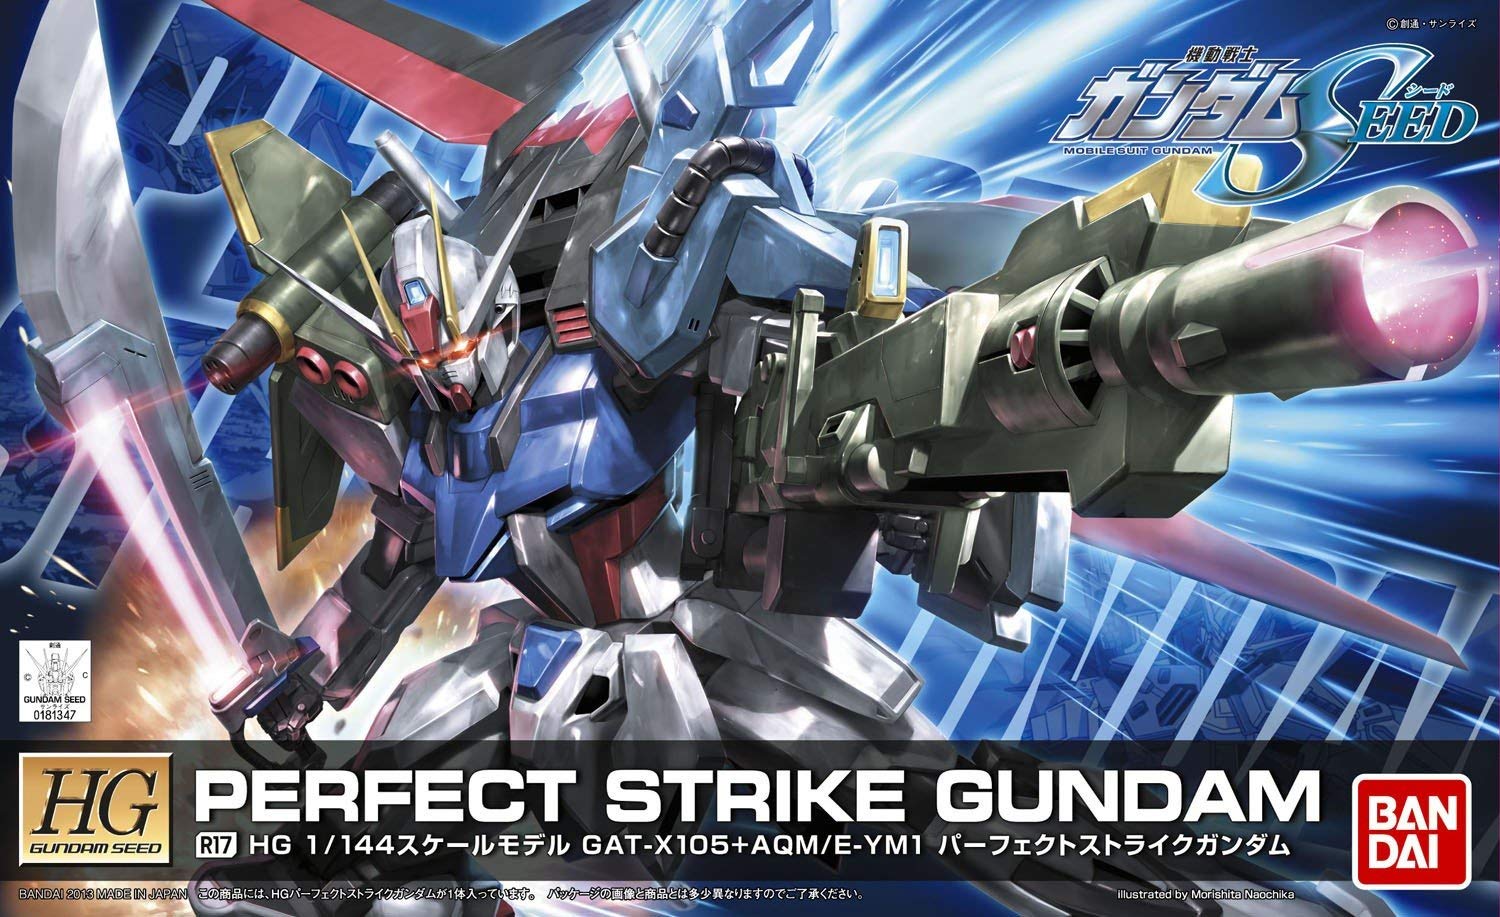 HG R17 1/144 GAT-X105+AQM/E-YM1 パーフェクトストライクガンダム [Perfect Strike Gundam] 5055750 4573102557506 0181347 4543112813473